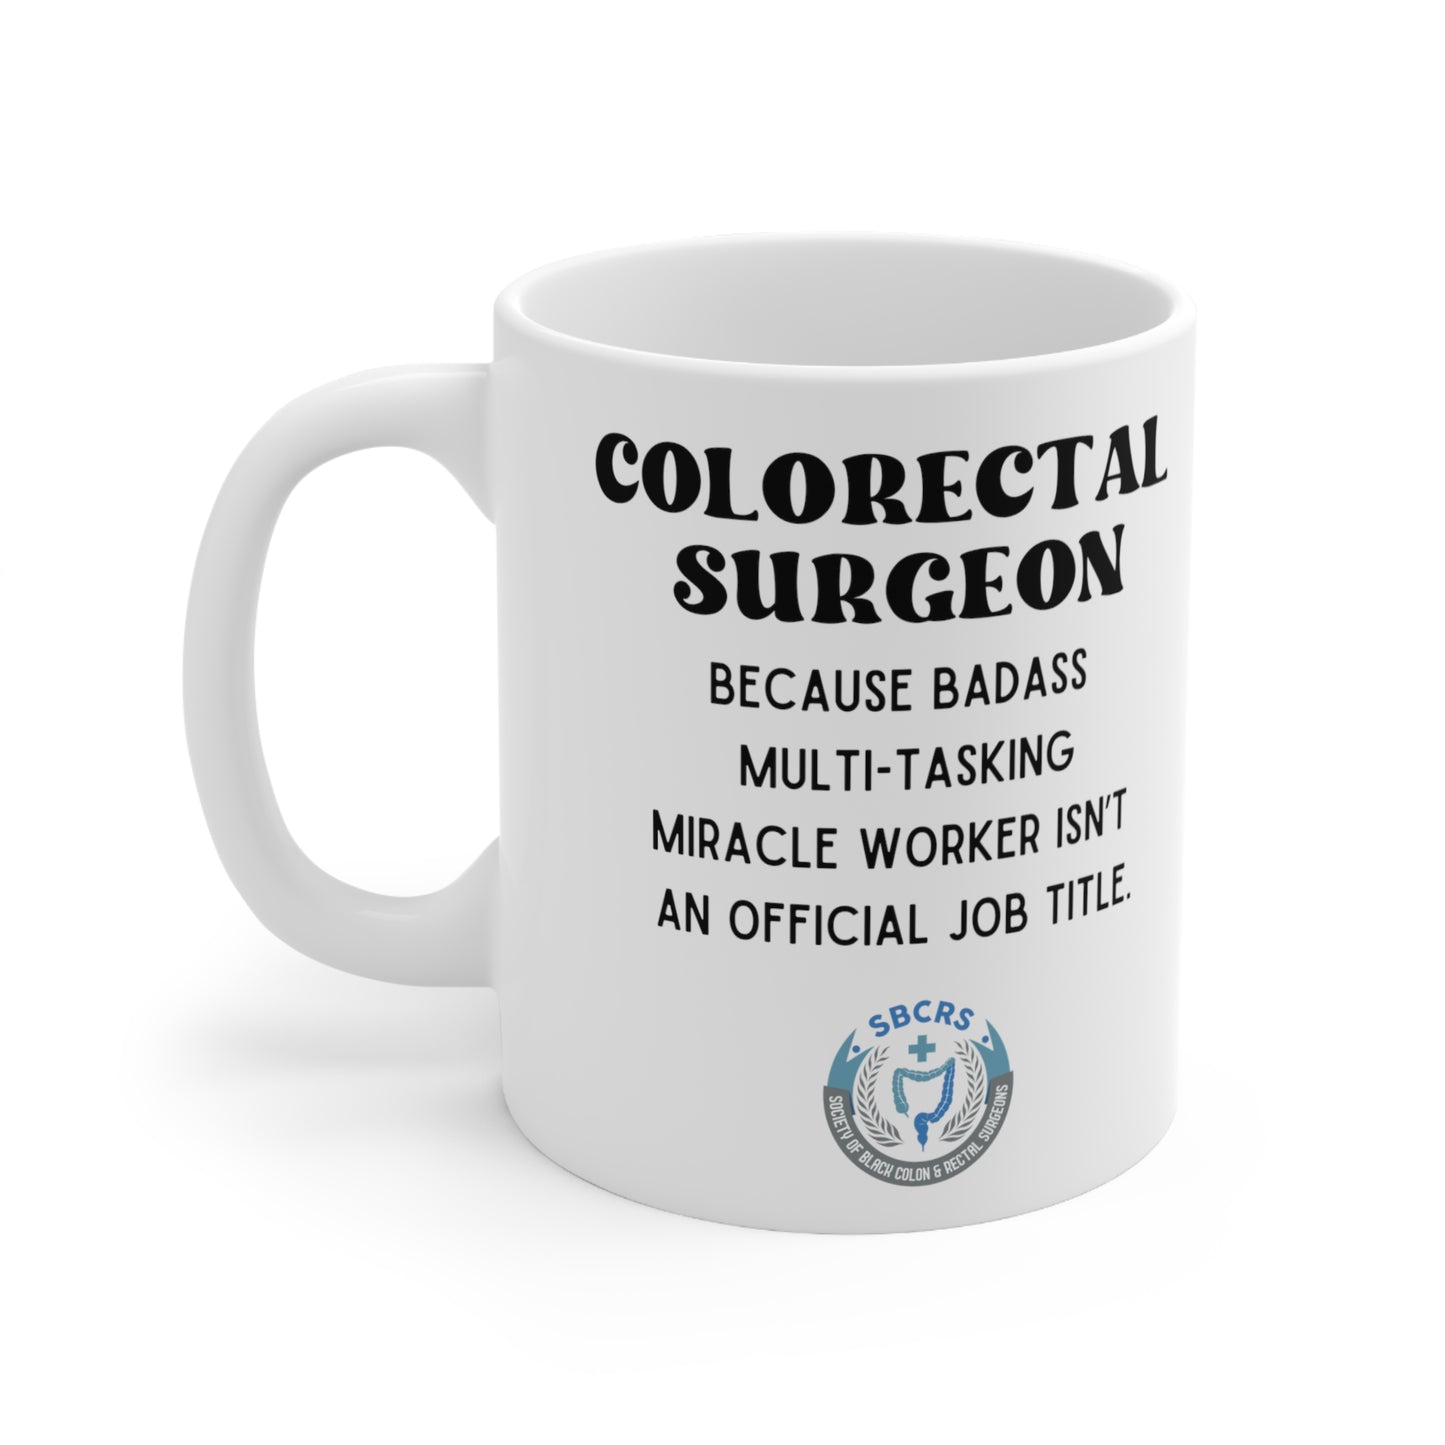 Colorectal Surgeon Mug, Coffee Mug Gift Coffee, Tea, Gifts 11oz, SBCRS logo